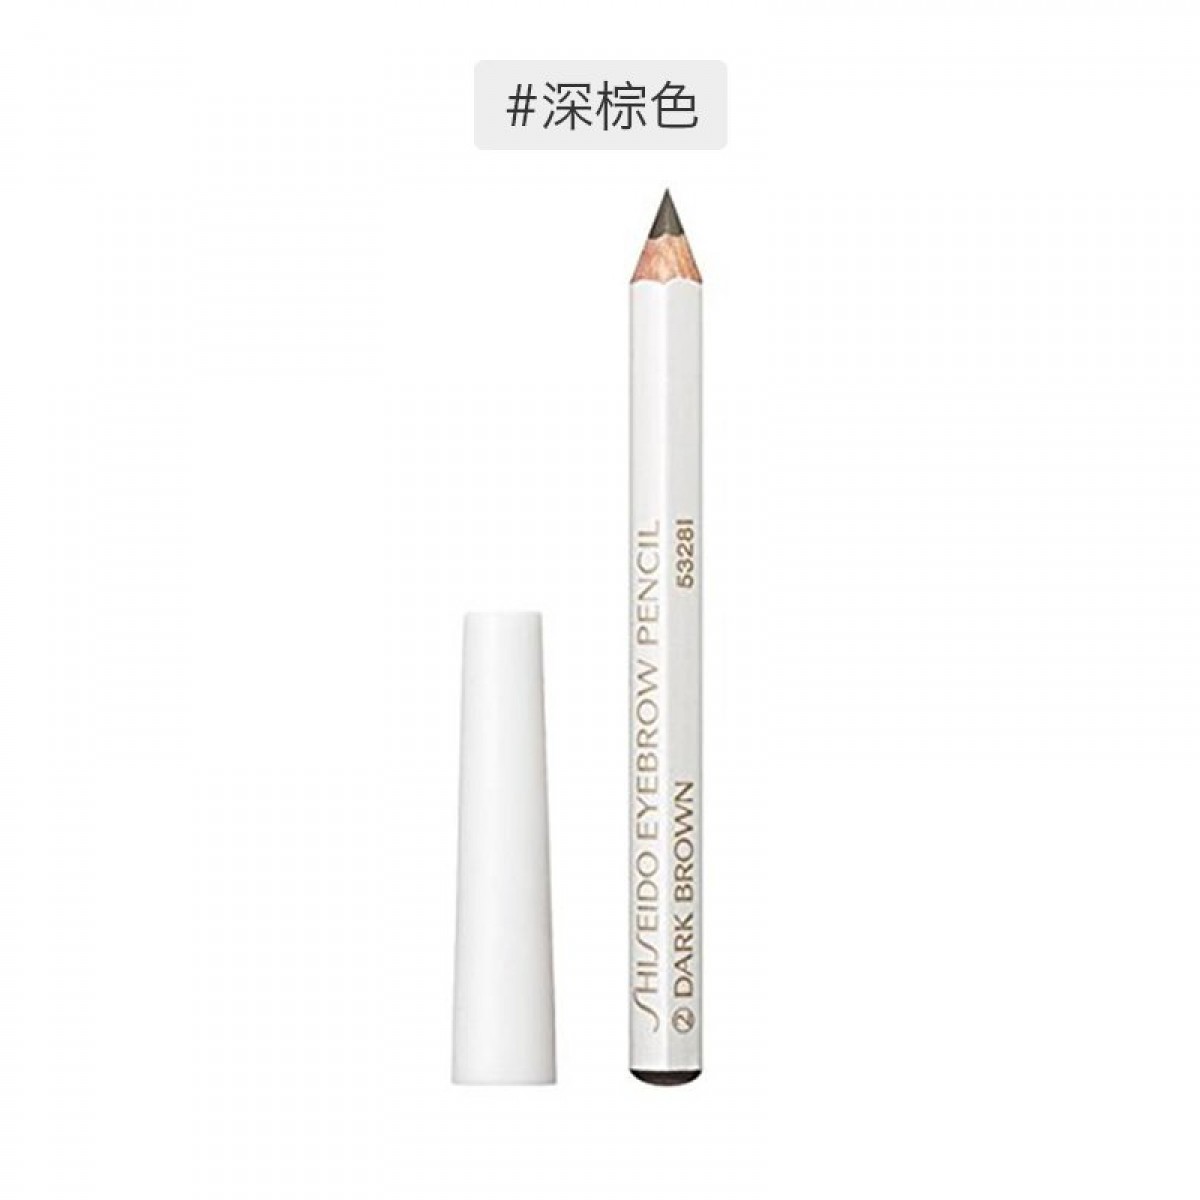 日本Shiseido资生堂 六角眉笔眉墨铅笔#02 深棕色1.2g